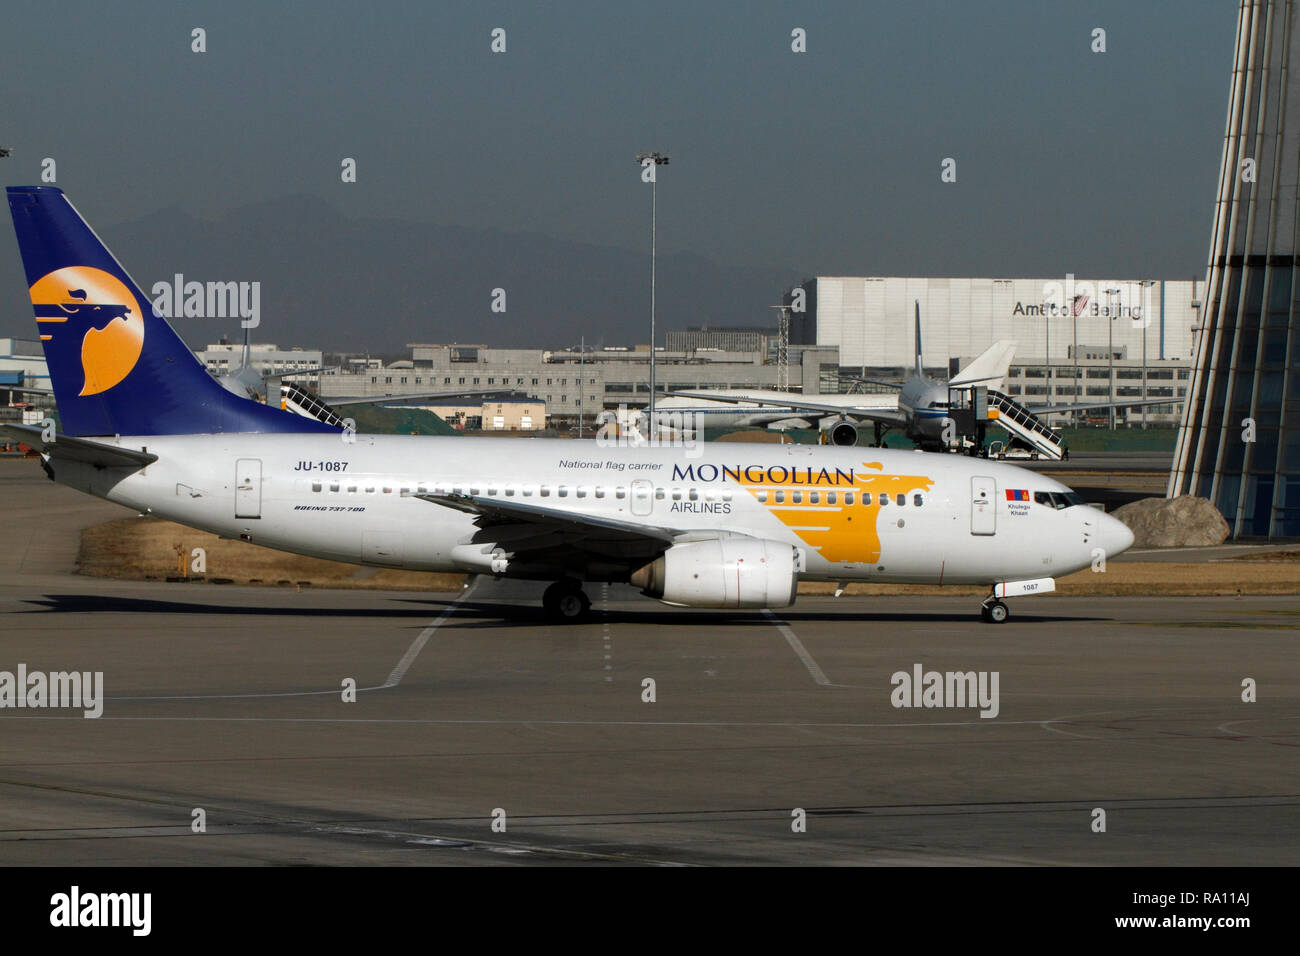 Boeing737-700, nationale Fluggesellschaft, mongolischen Ailrlines. Drücken Sie am internationalen Flughafen Peking, China. Stockfoto